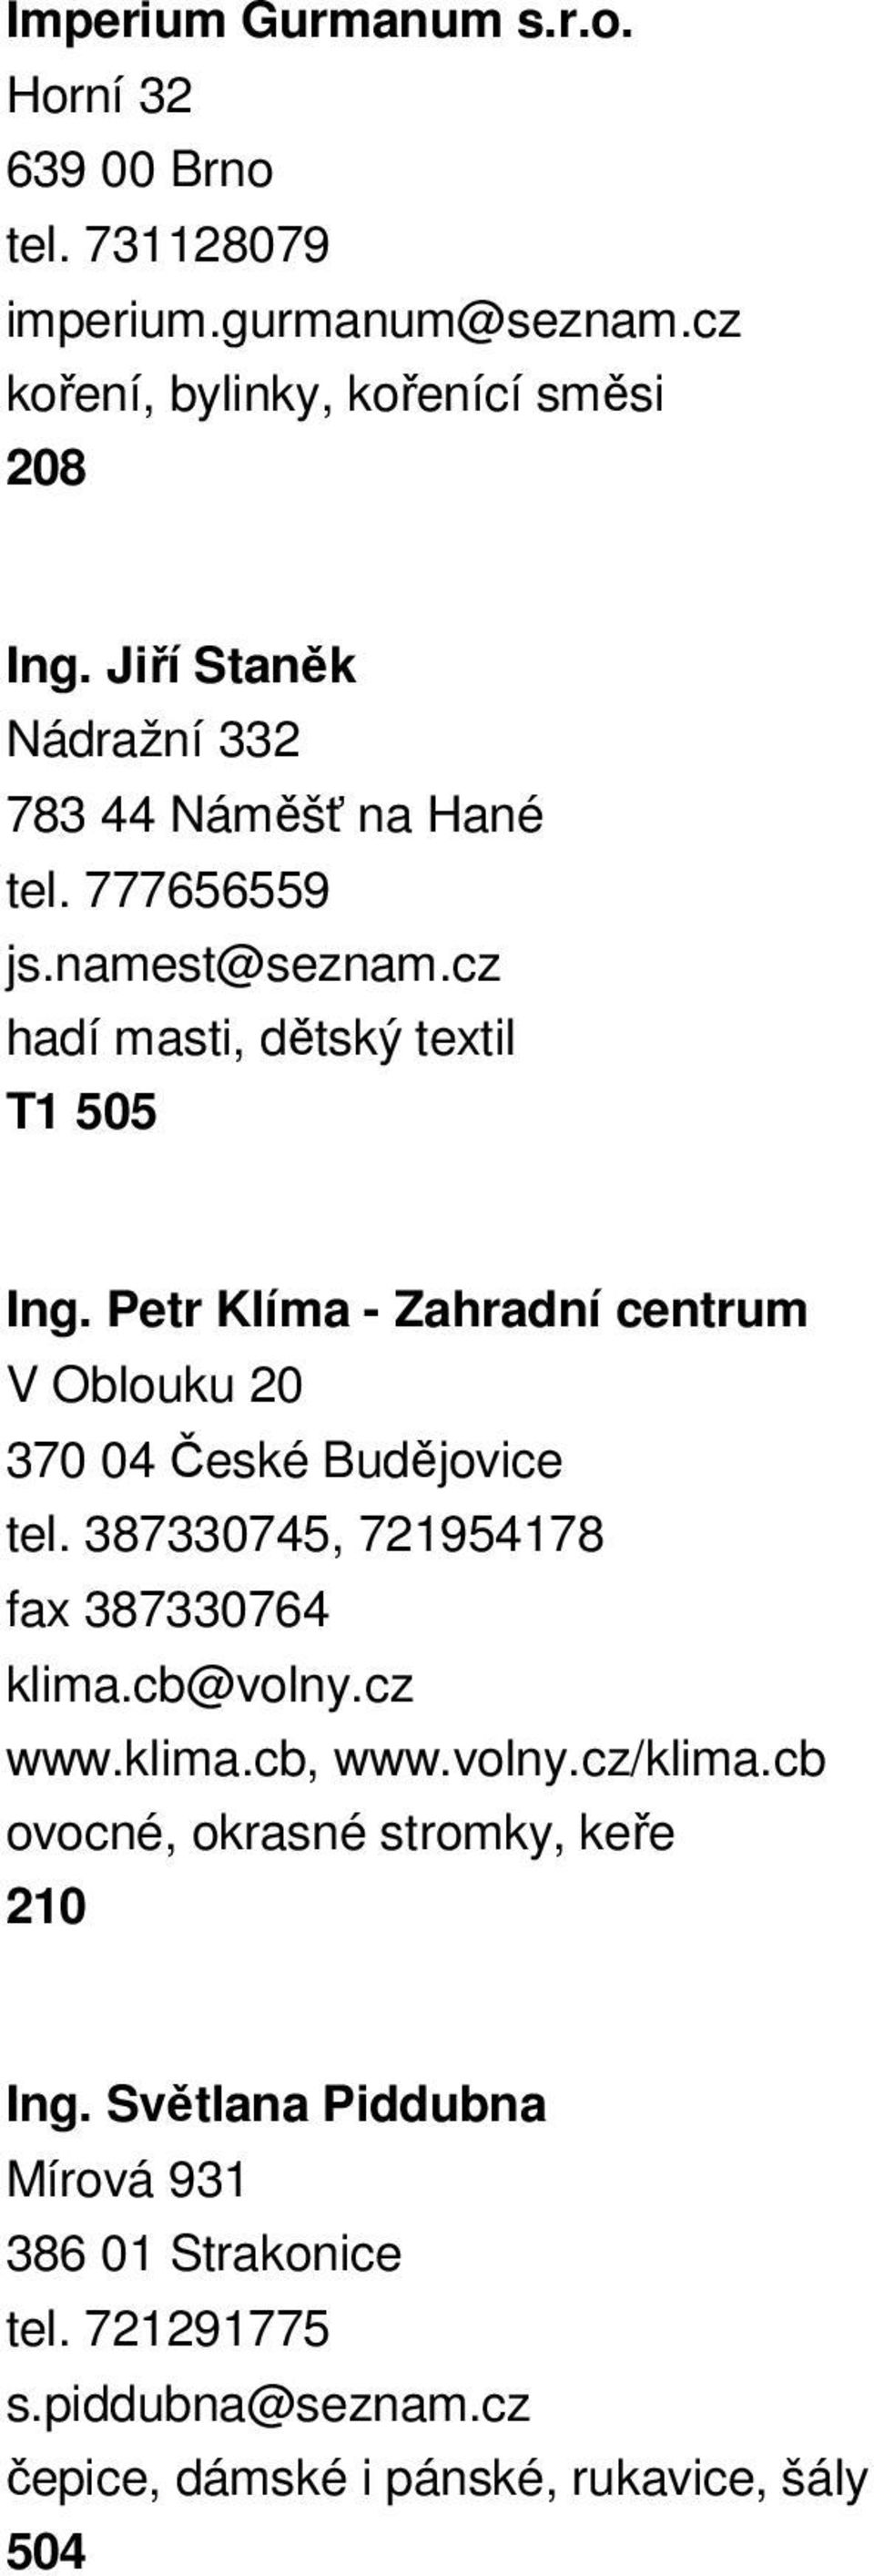 Petr Klíma - Zahradní centrum V Oblouku 20 370 04 České Budějovice tel. 387330745, 721954178 fax 387330764 klima.cb@volny.cz www.klima.cb, www.